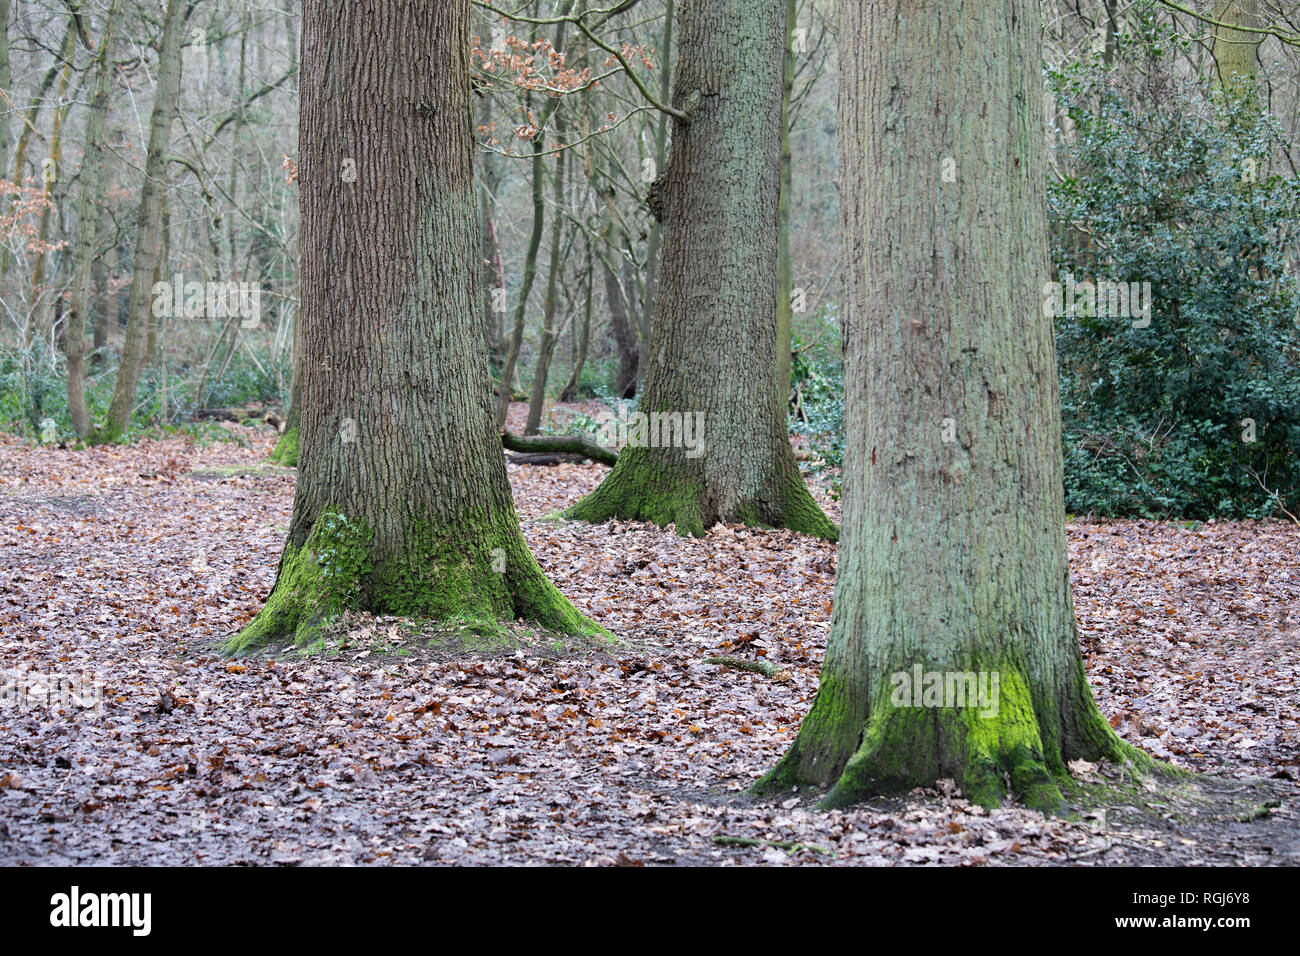 L'image d'un trio d'arbres forestiers avec l'accent de l'accent sur l'arborescence de gauche la création d'une faible profondeur de champ. Banque D'Images